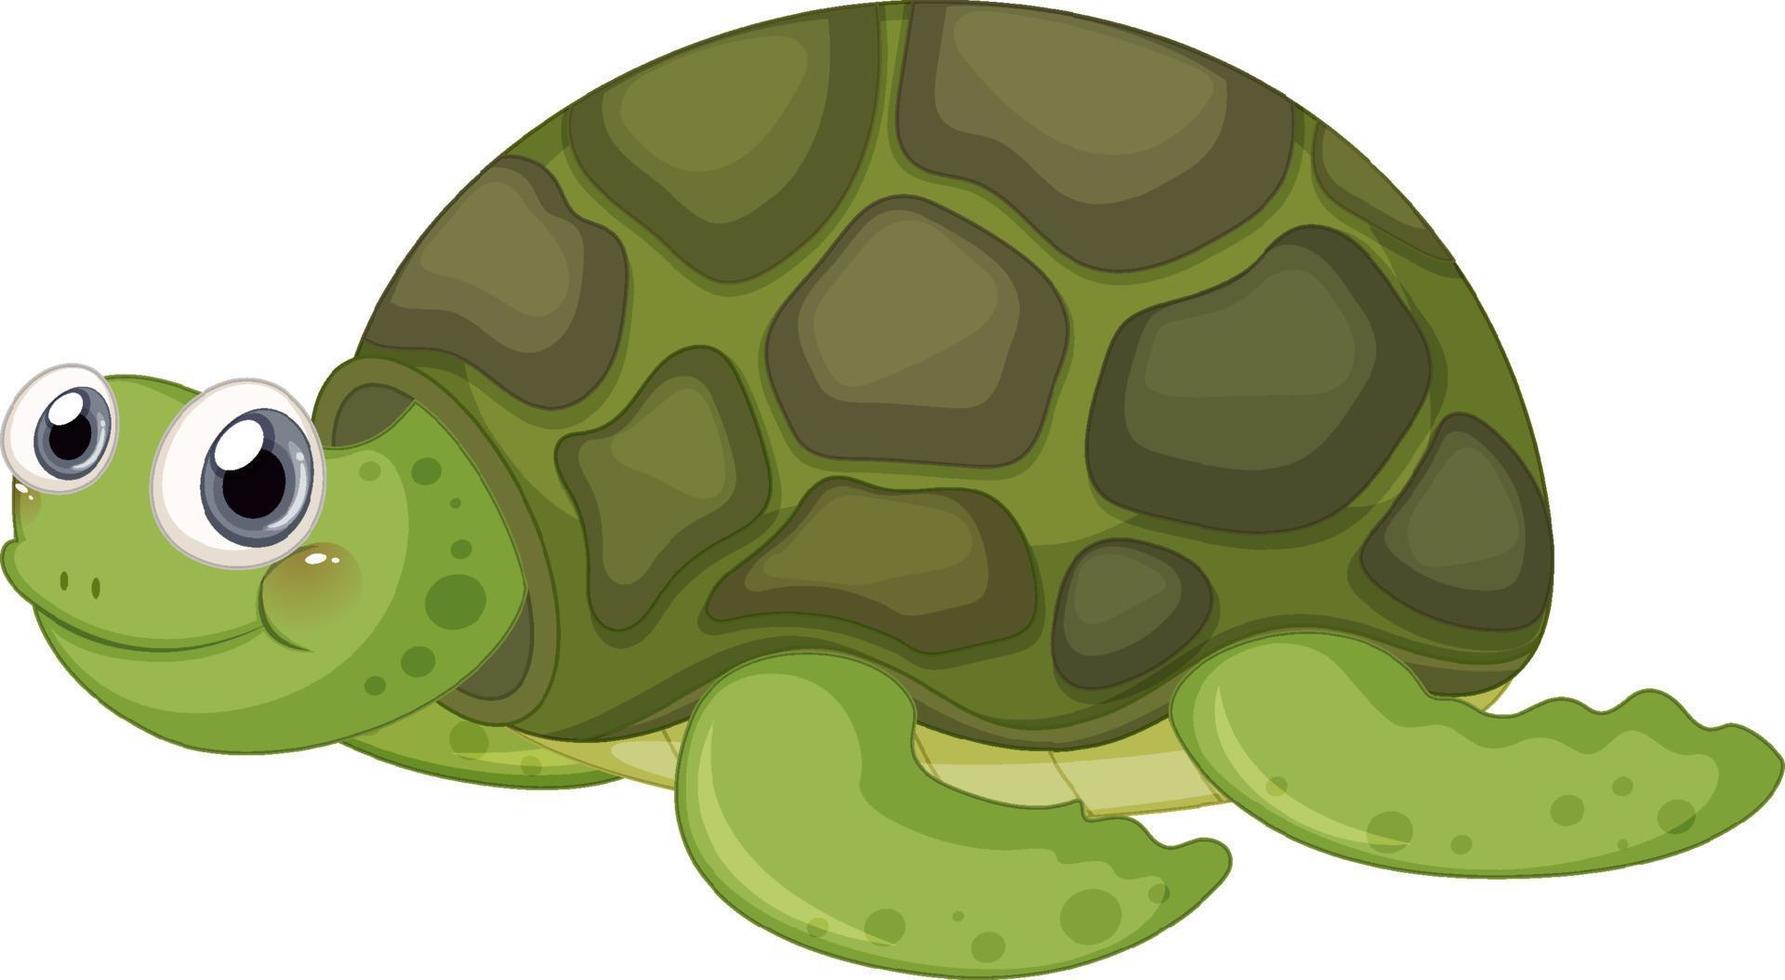 personagem de desenho animado de tartaruga fofa em fundo branco vetor